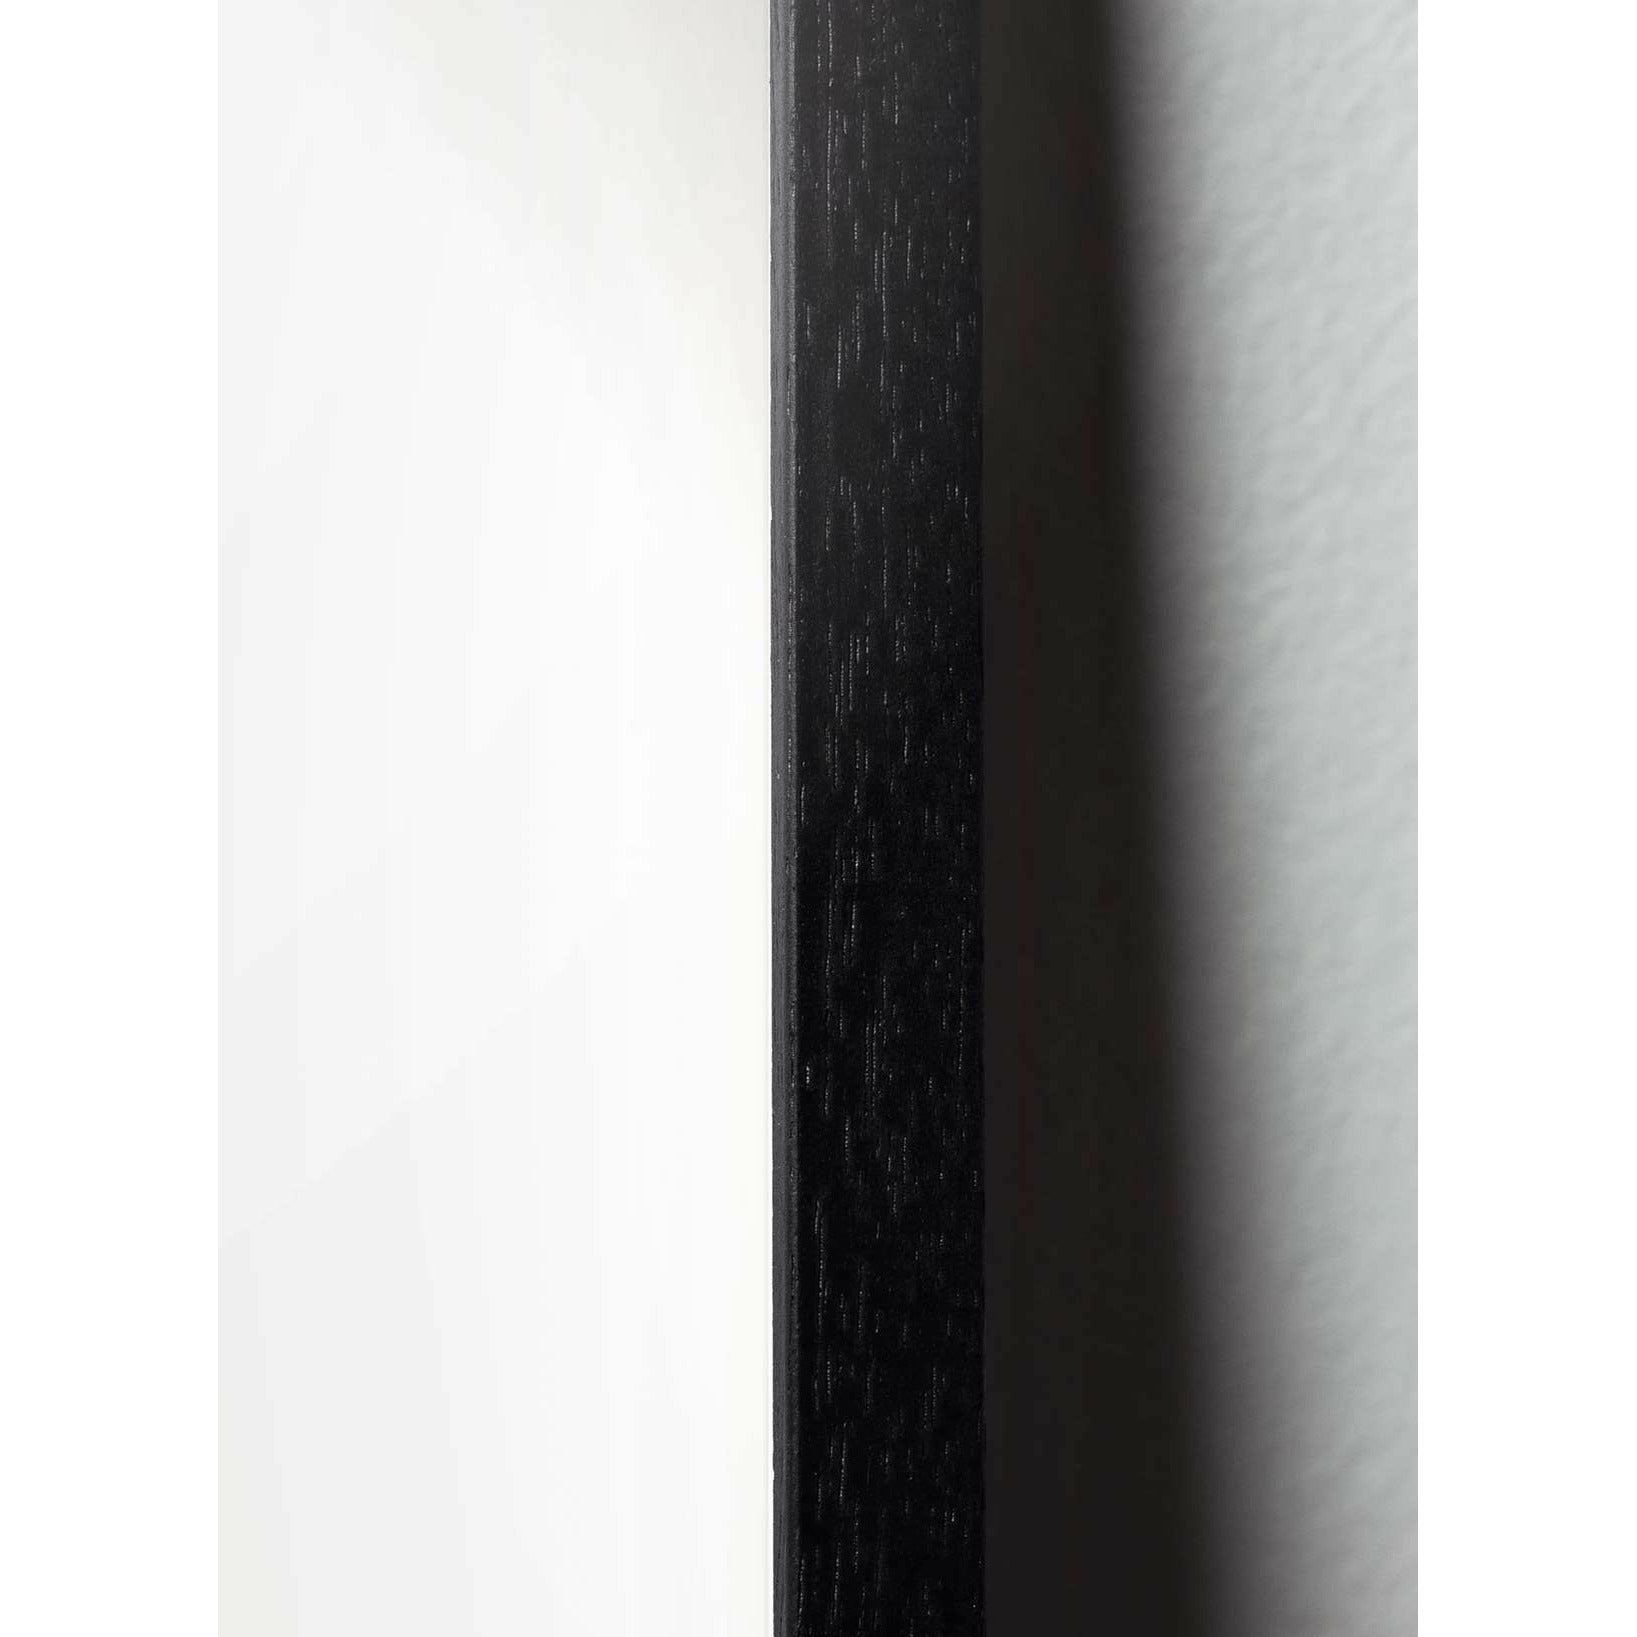 brainchild Ameisen klassisches Poster, Rahmen im schwarz lackierten Holz 70x100 cm, weißer Hintergrund